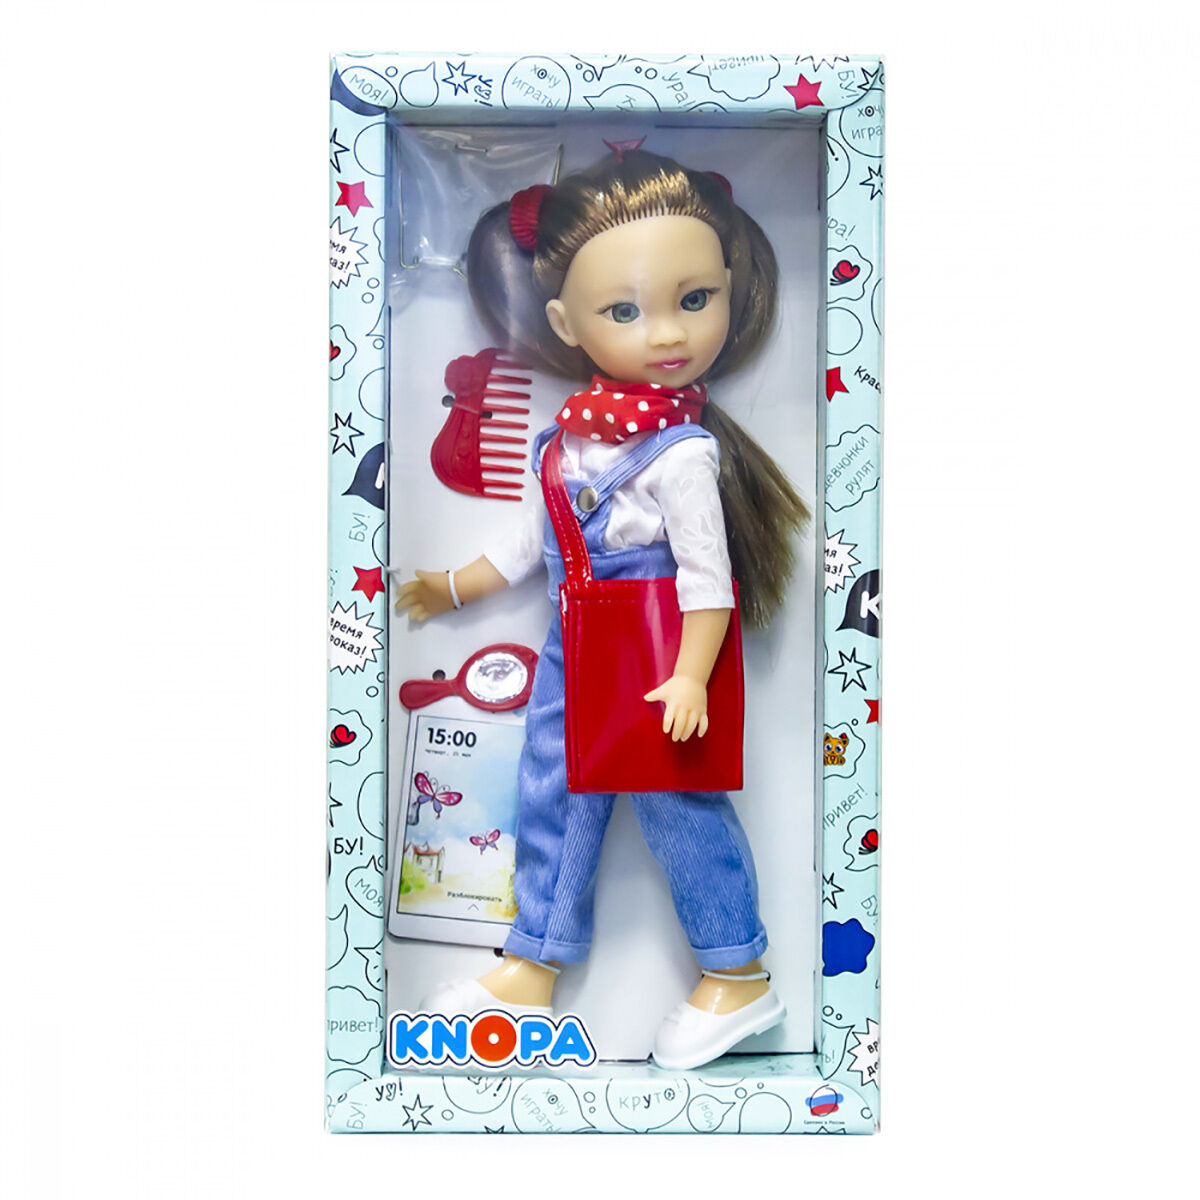 Кукла Мишель на пленэре (в коробке), 36 см. купить подарок для девочки